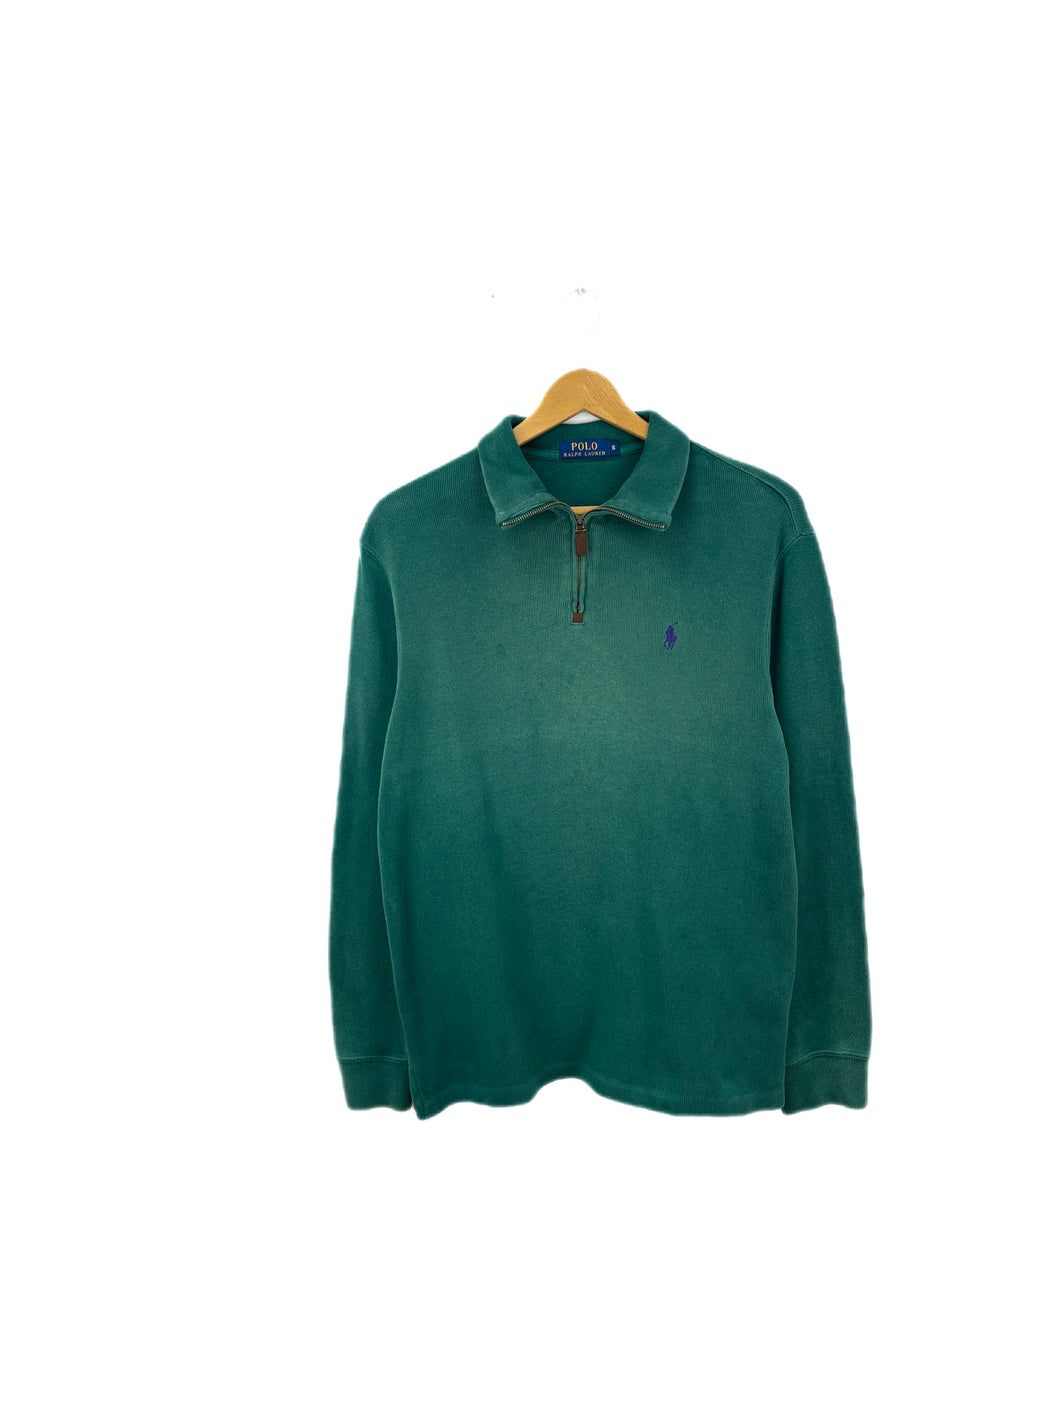 Ralph Lauren 1/4 Zip Sweatshirt - Small